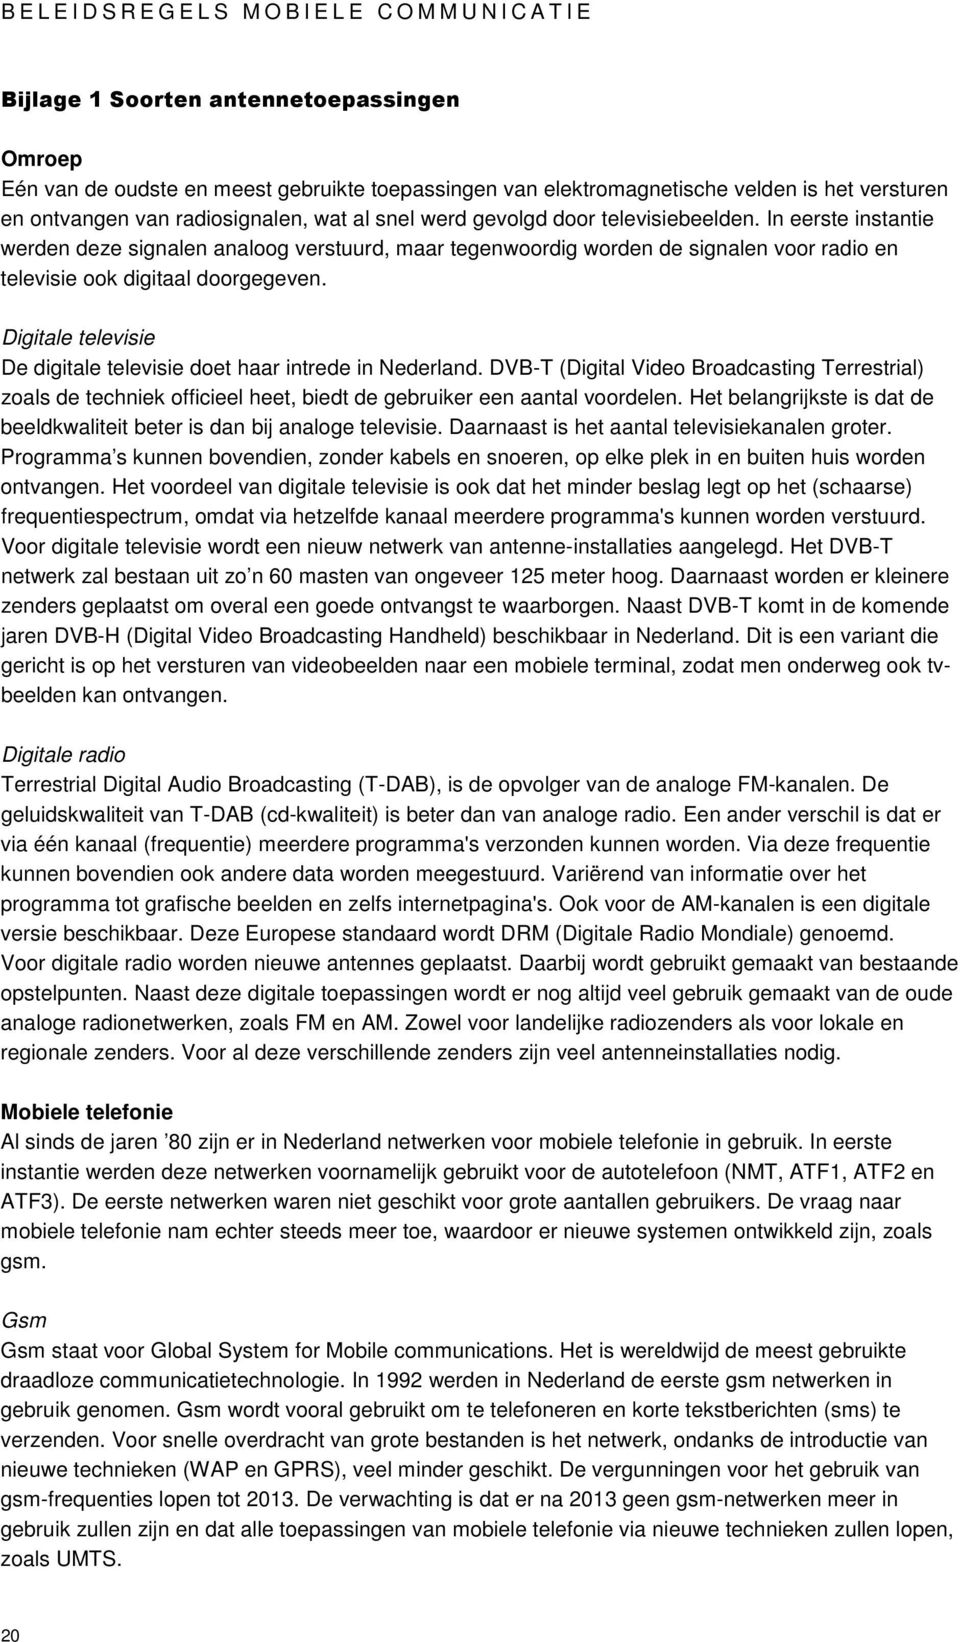 Digitale televisie De digitale televisie doet haar intrede in Nederland. DVB-T (Digital Video Broadcasting Terrestrial) zoals de techniek officieel heet, biedt de gebruiker een aantal voordelen.